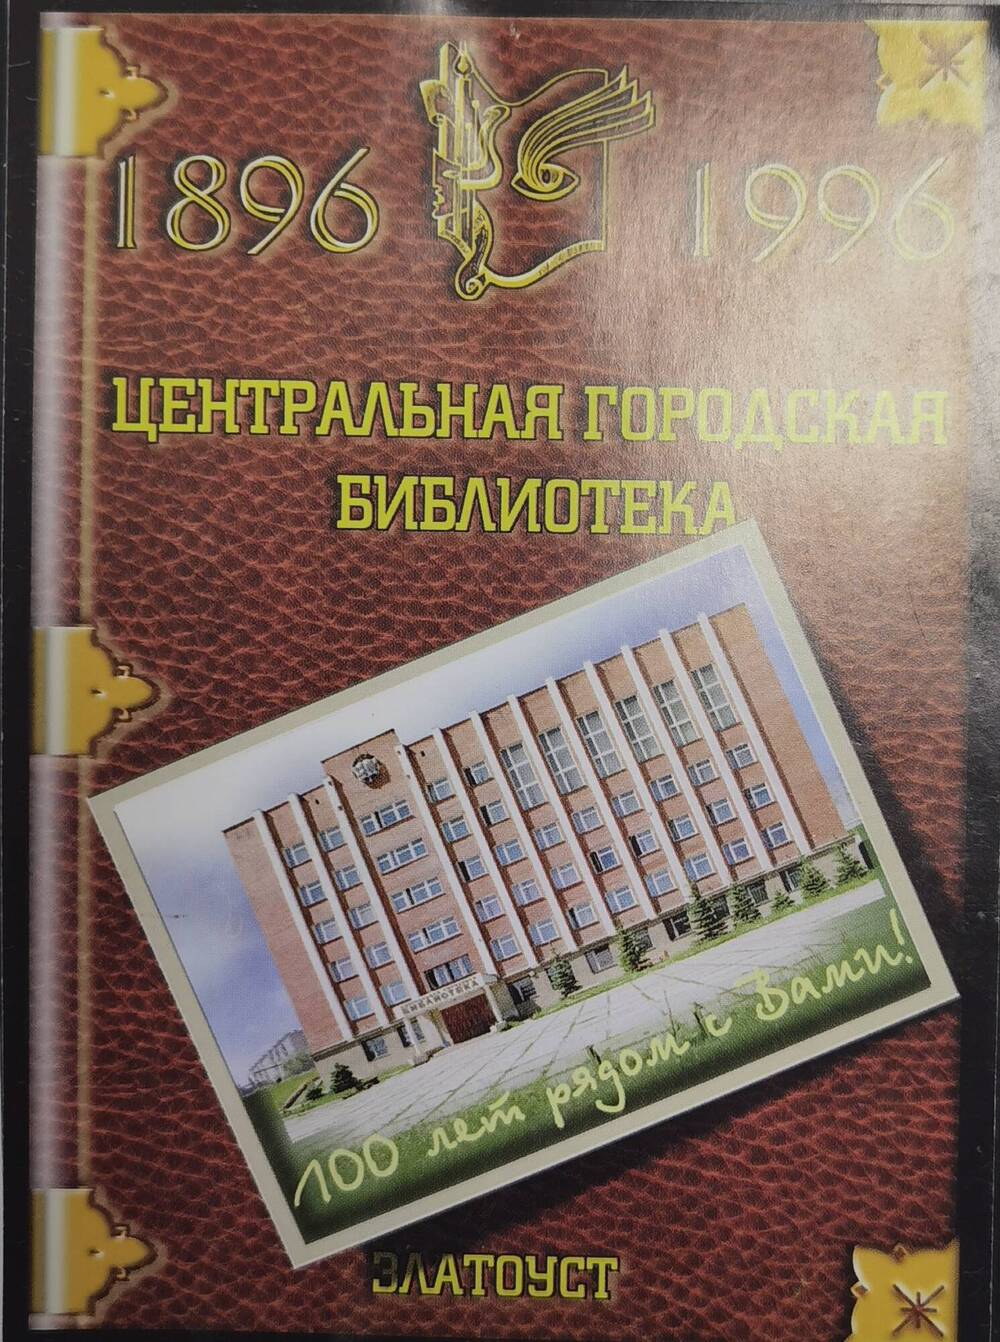 Открытка рекламная Центральной городской библиотеки, выпущенная к 100-летию библиотеки, 1996 г.